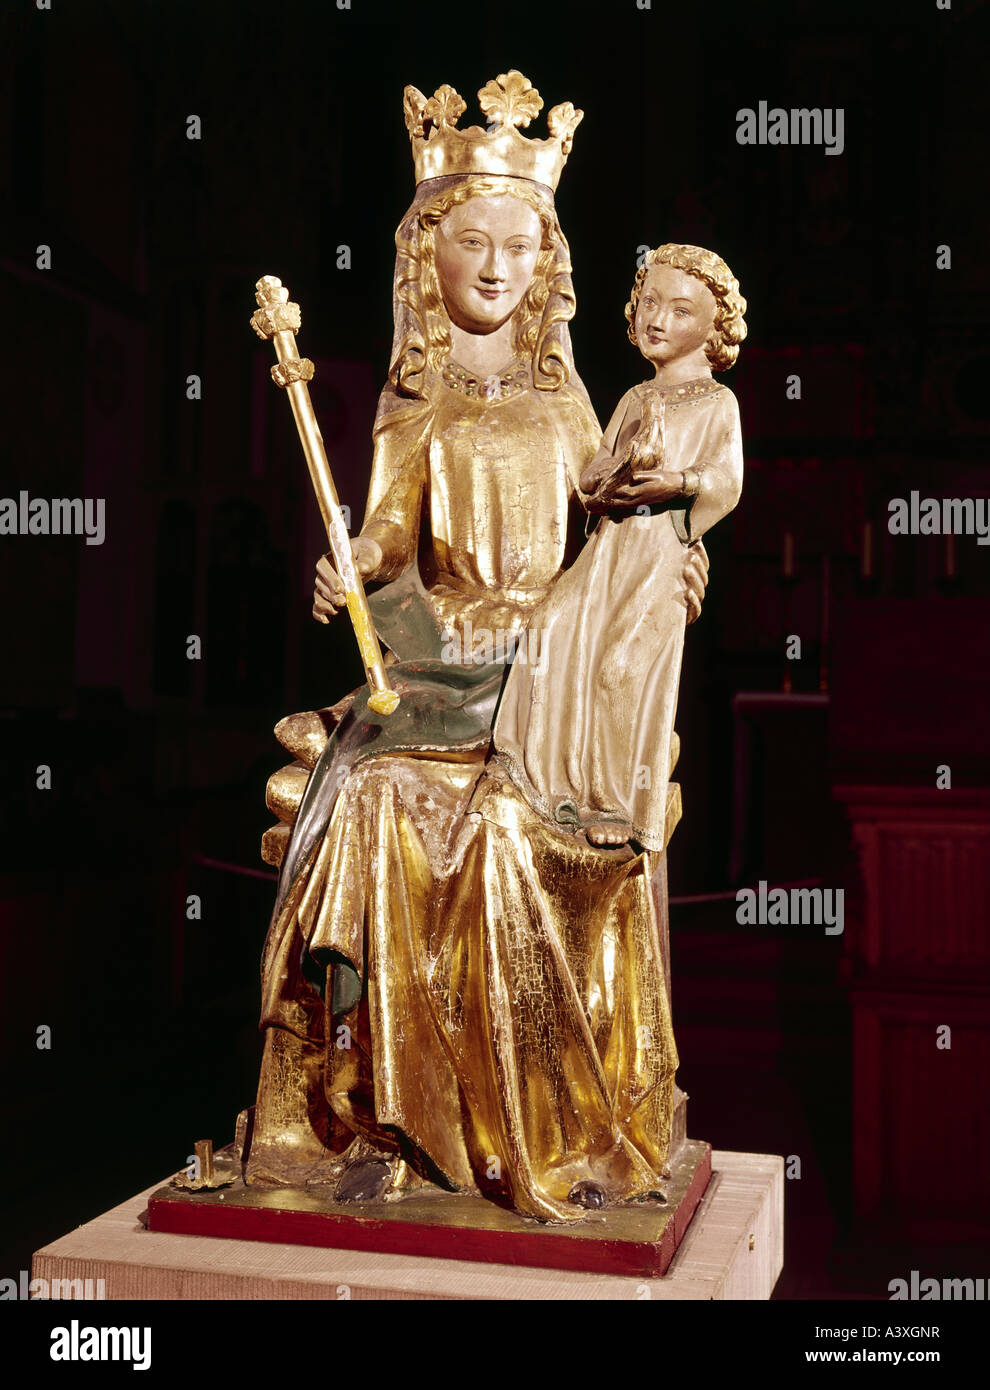 Belle arti, Santa Maria con Gesù Bambino, Madonna di Kiedrich, scultura, circa 1330 - 1350, legno, Kiedrich chiesa parrocchiale, religio Foto Stock